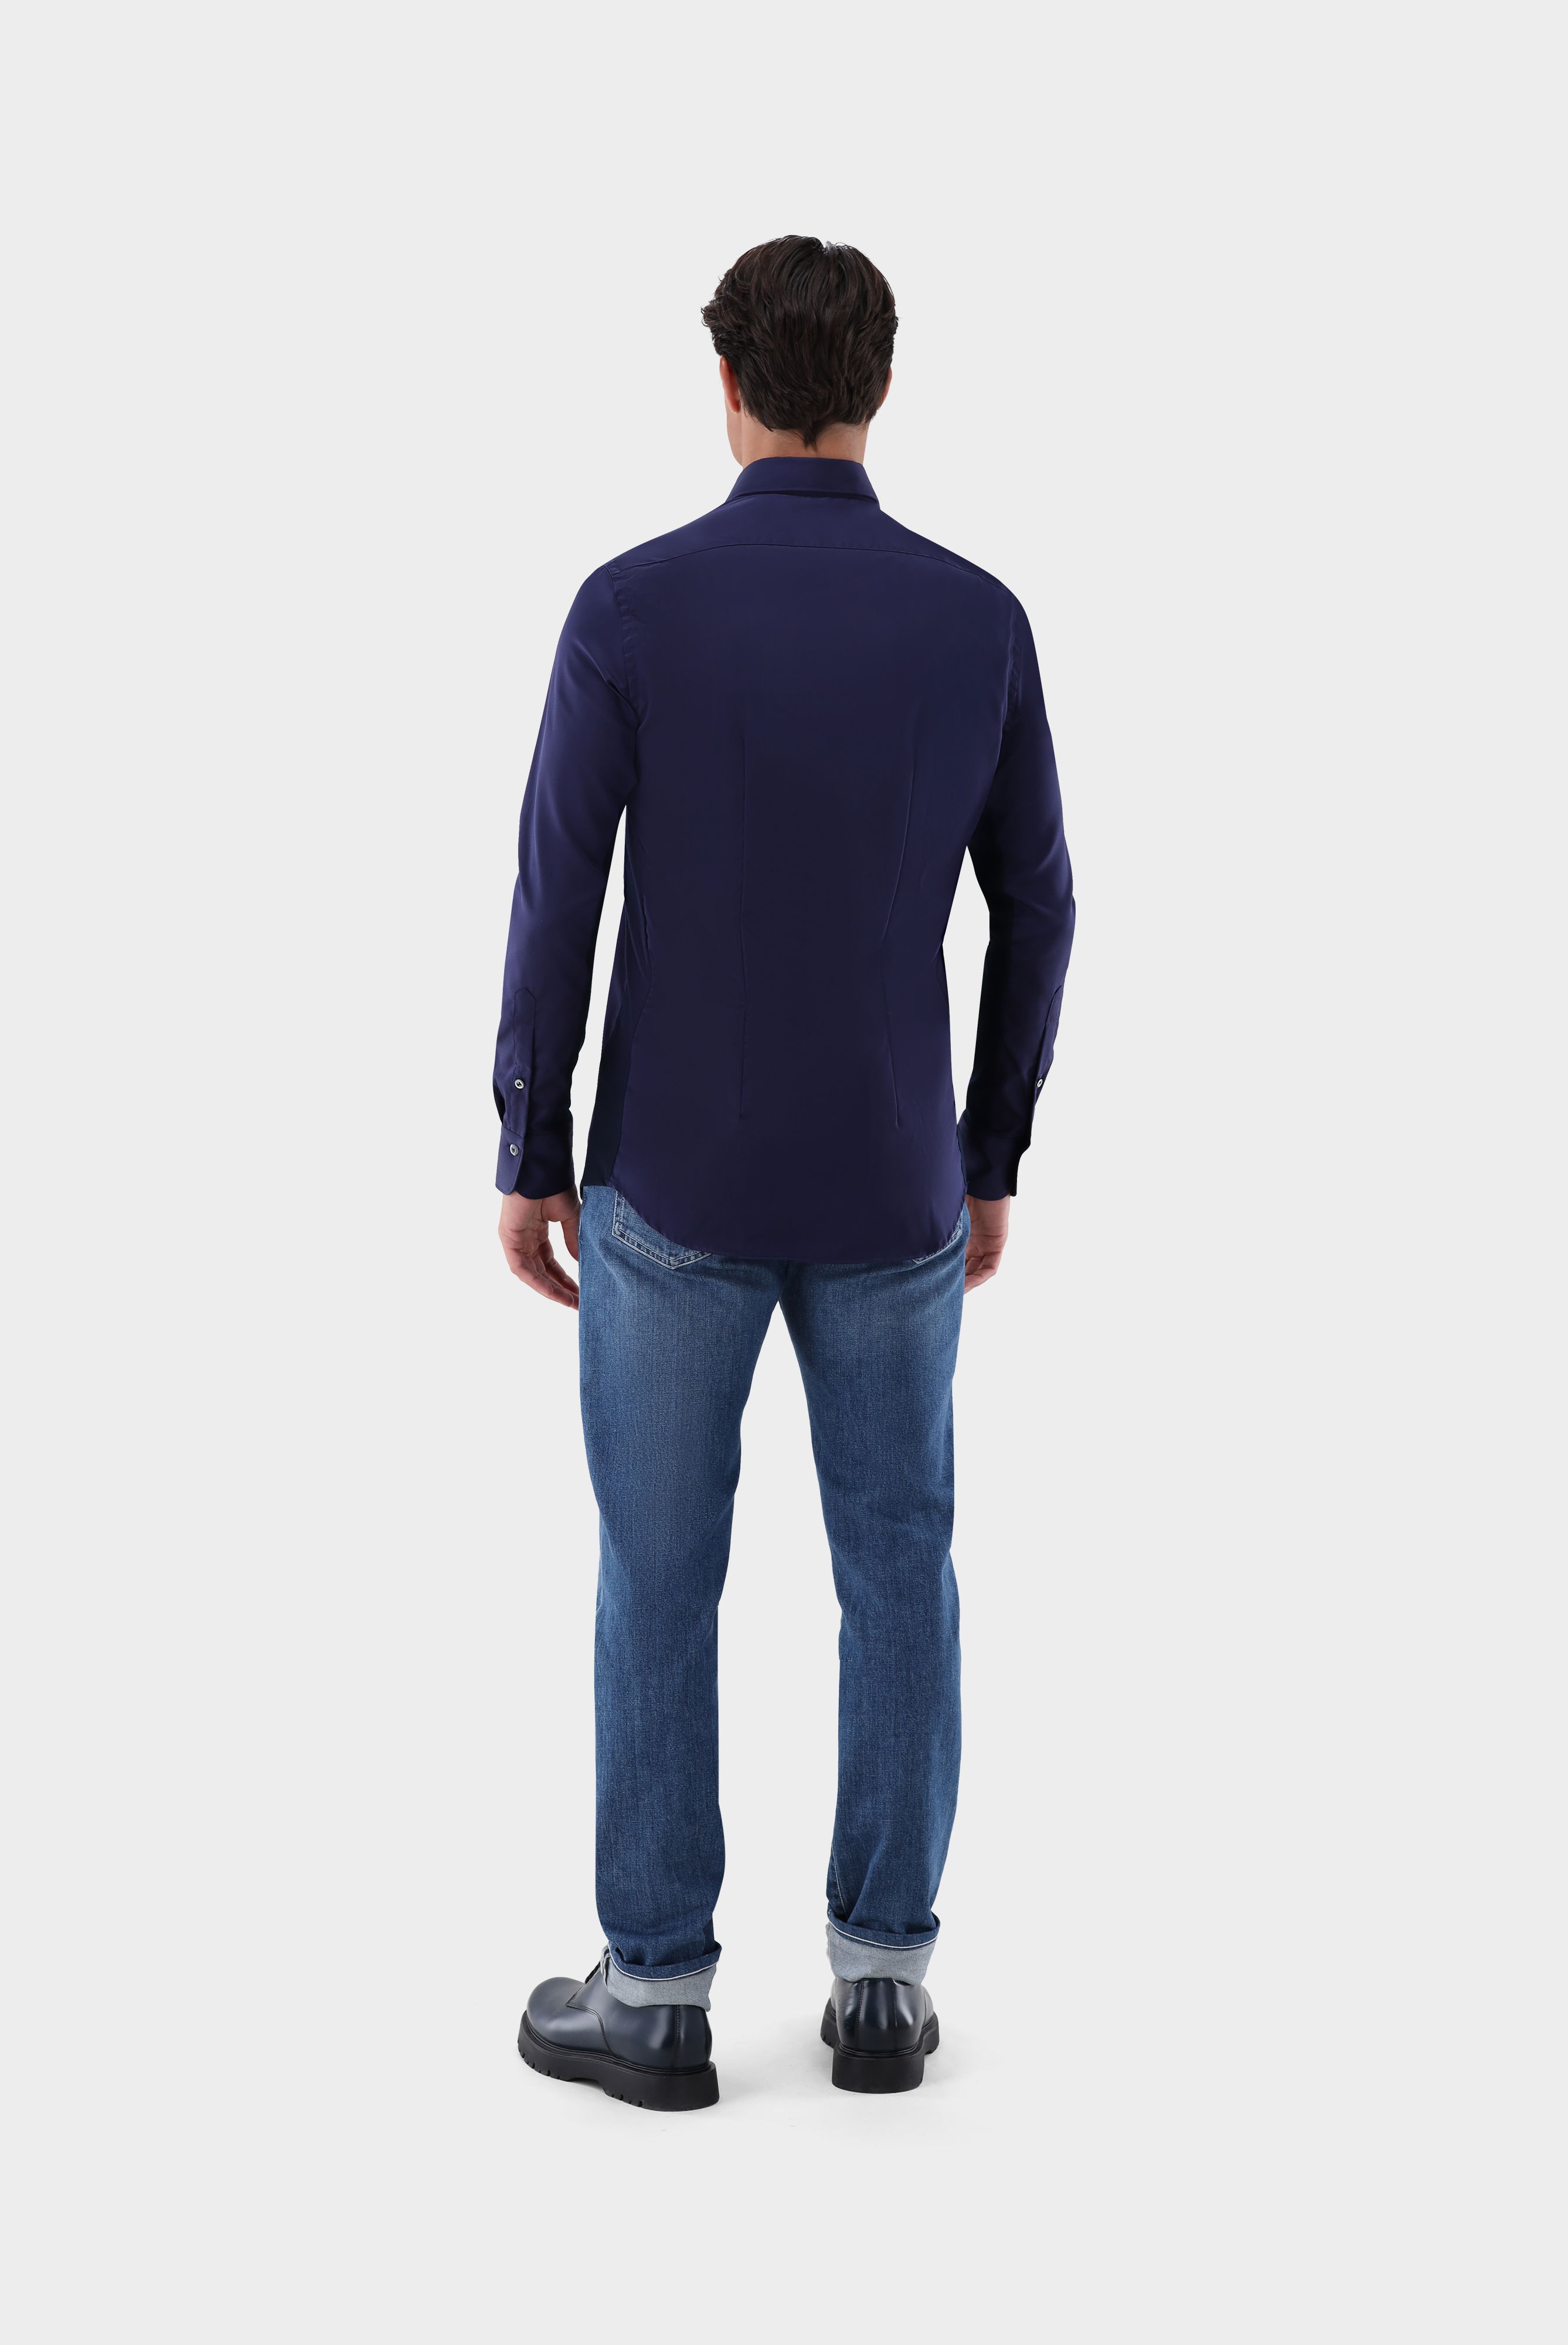 Bügelleichte Hemden+Bügelfreies Hybridshirt mit Jerseyeinsatz Slim Fit+20.2553.0F.132241.790.42